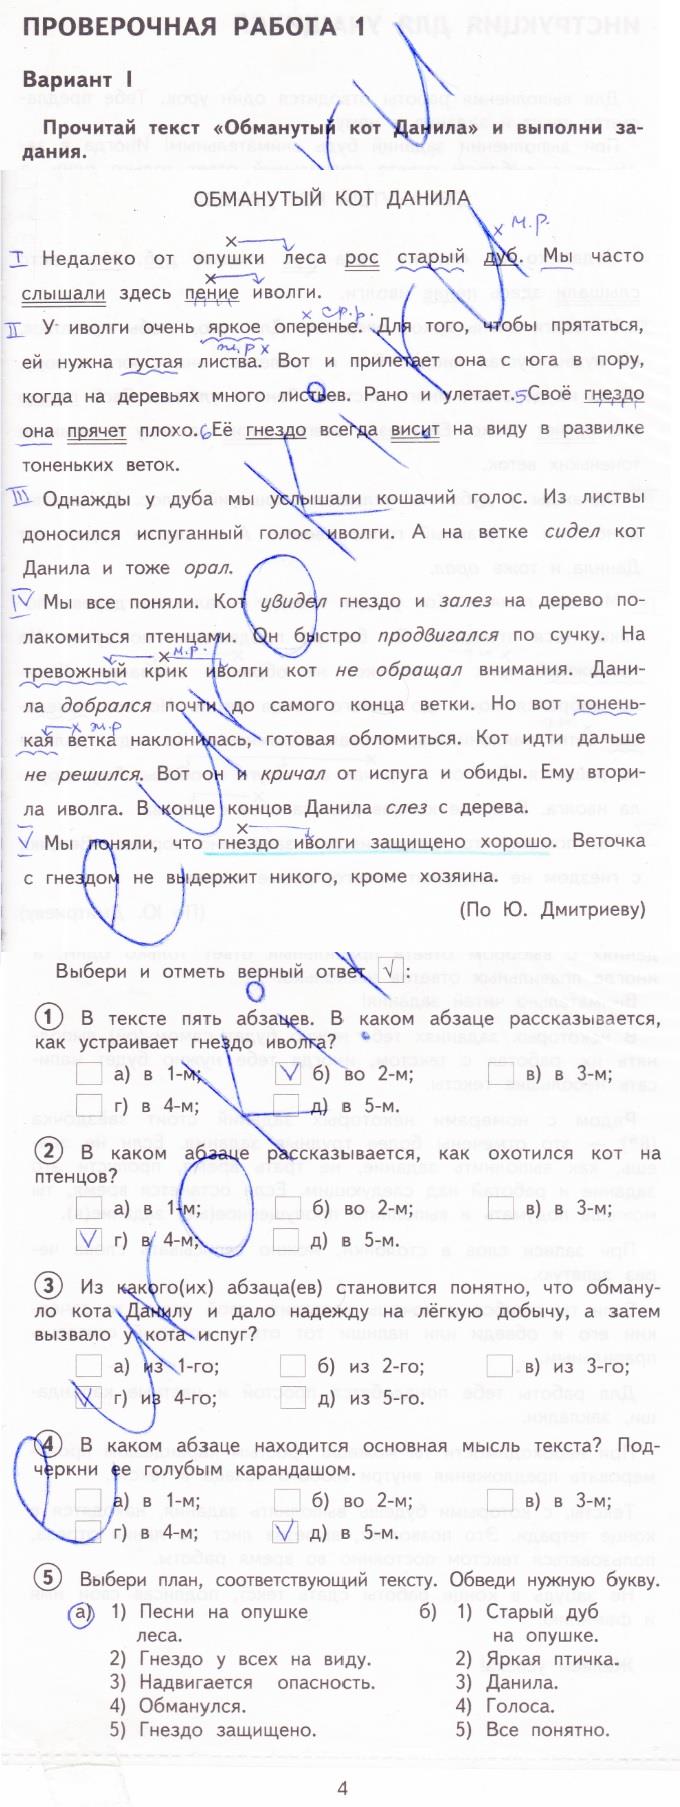 гдз 3 класс тетрадь для проверочных работ страница 4 русский язык Лаврова